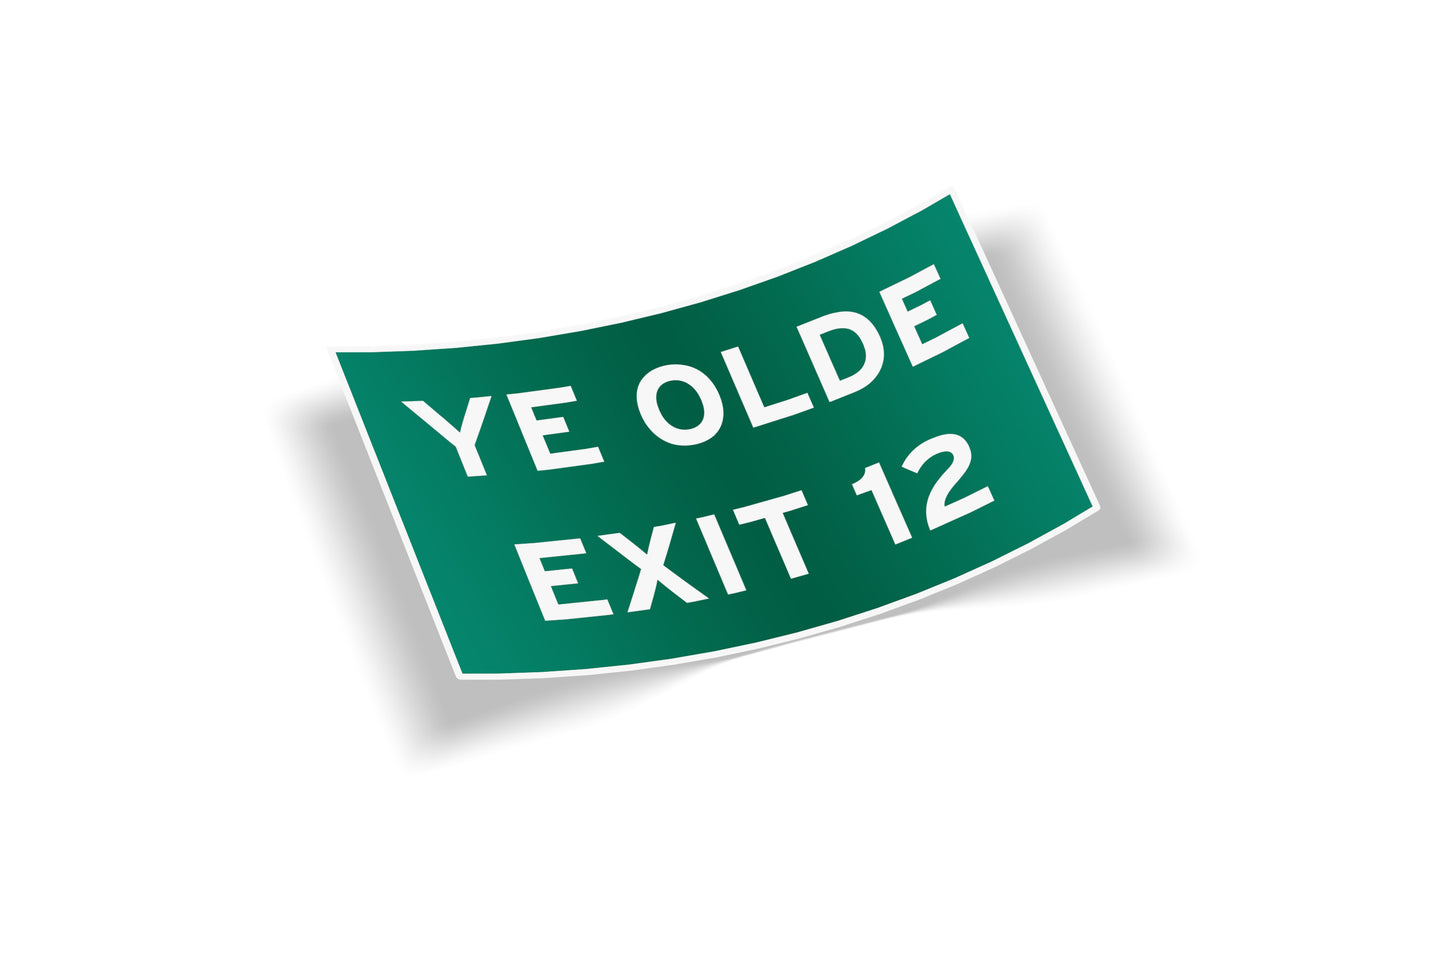 Ye Olde Exit 12 Cape Cod Waterproof Vinyl Bumper Sticker